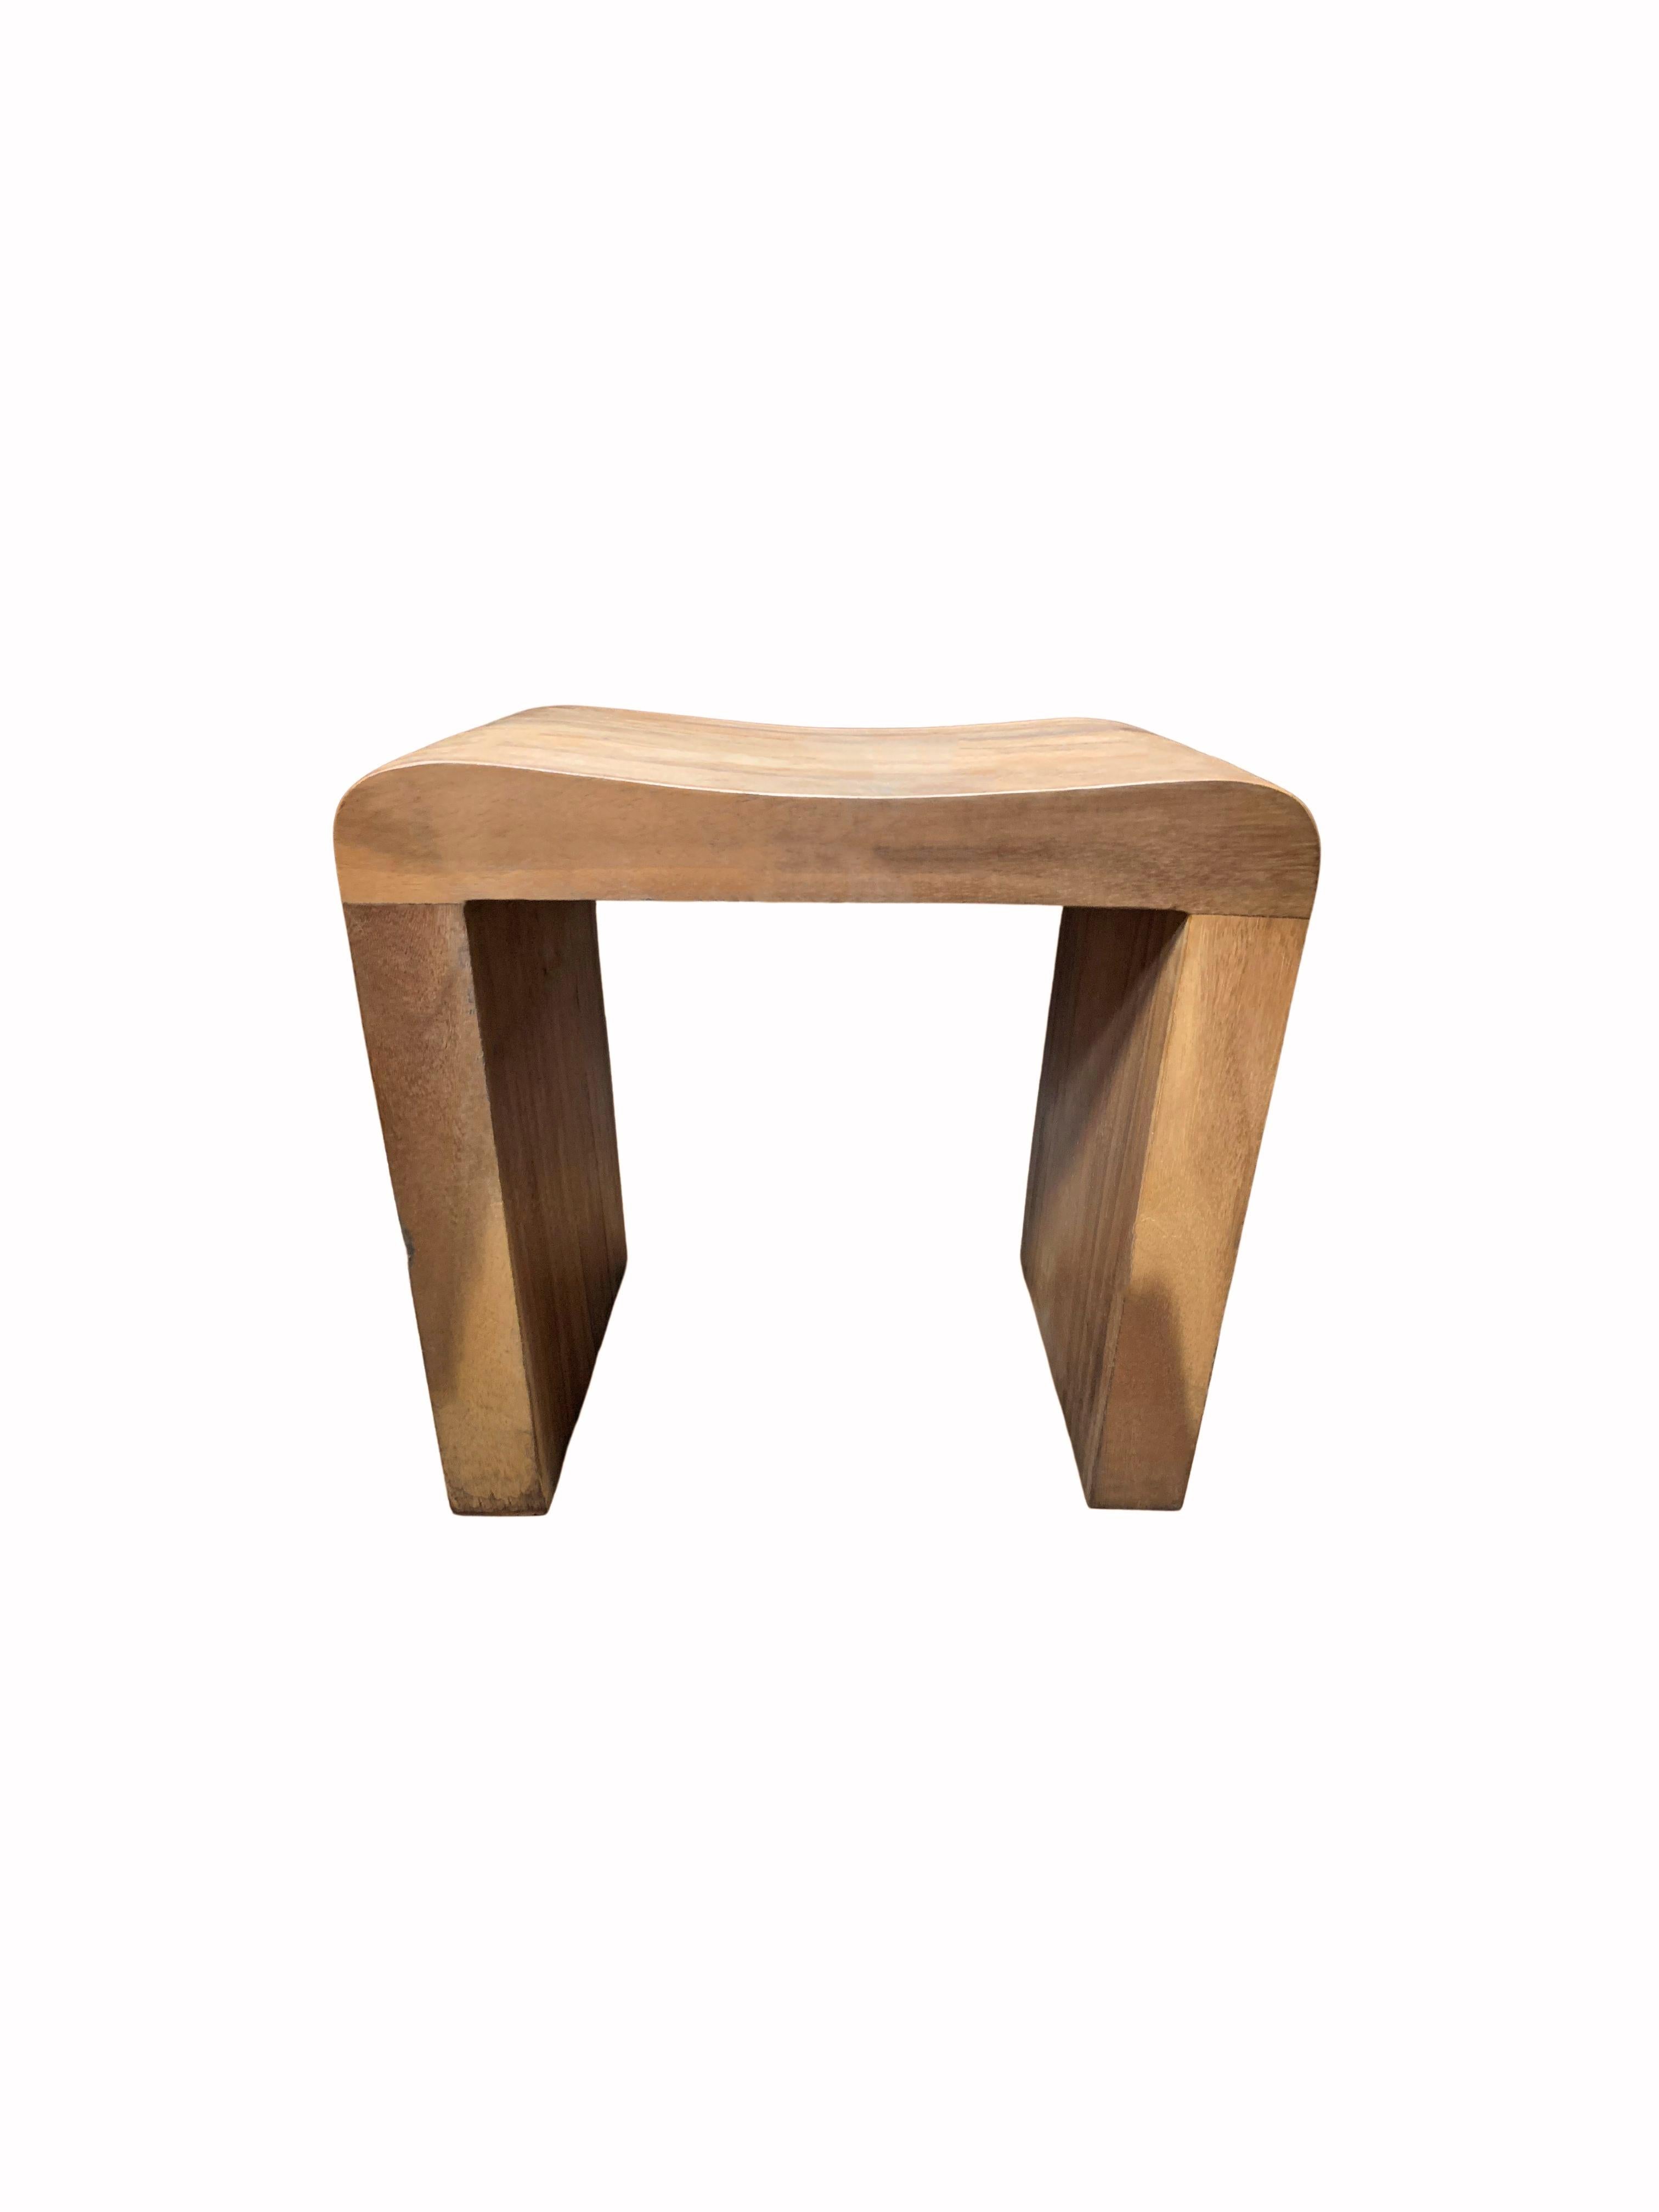 Un tabouret en bois de teck merveilleusement sculptural avec une assise incurvée. Le mélange de textures et de teintes de bois ajoute à son charme. Sa couleur neutre et sa forme minimaliste lui permettent de s'adapter à tous les espaces.